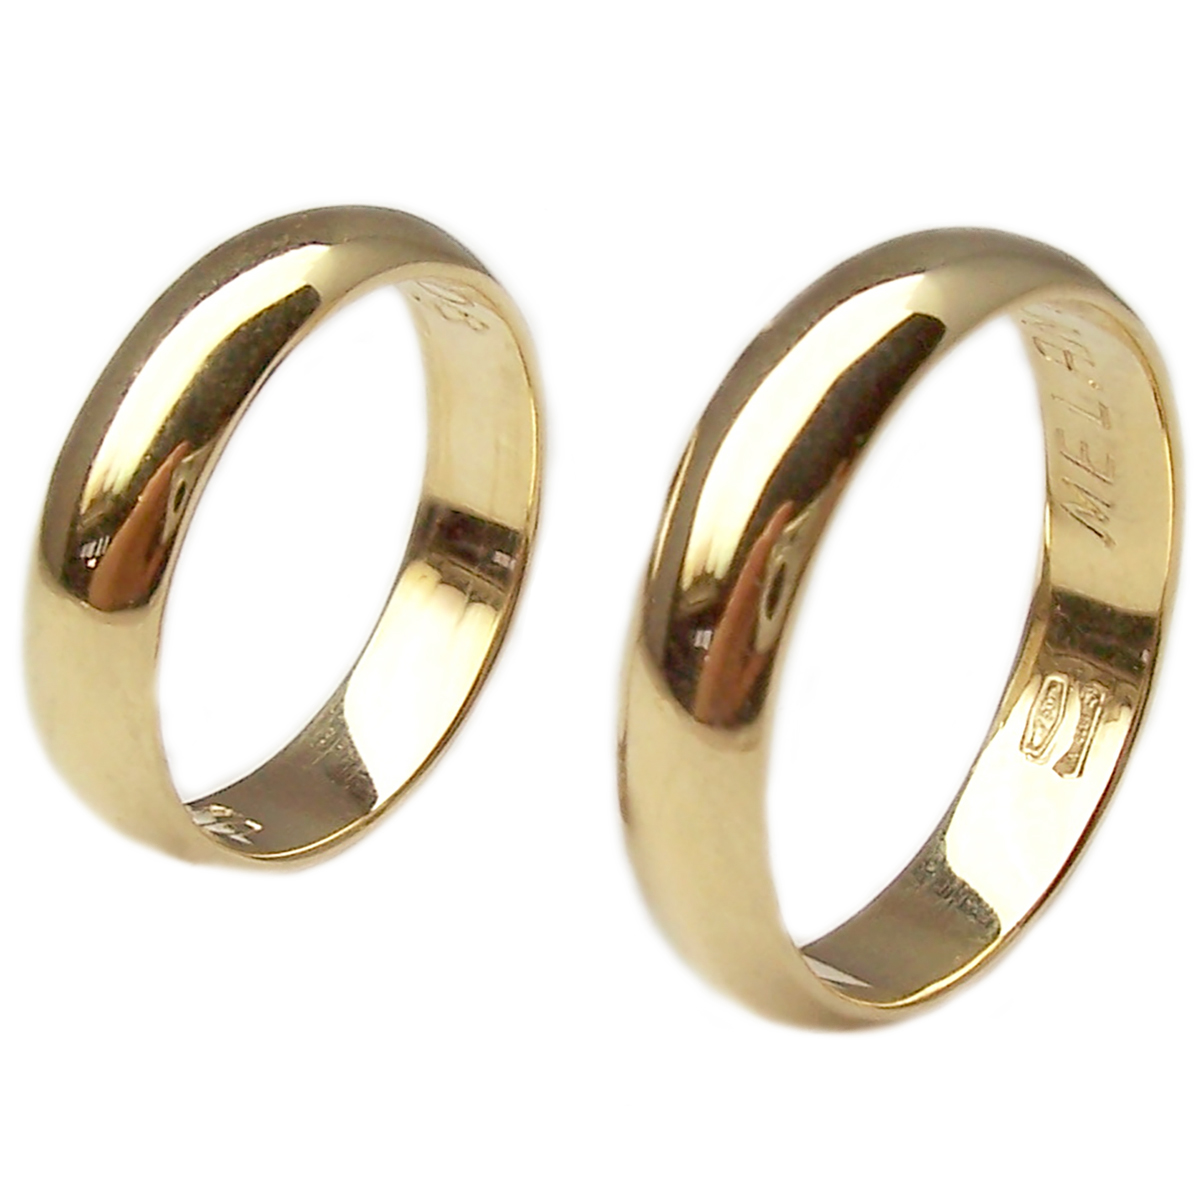 Anelli nuziali per matrimonio in oro giallo o bianco 5 mm fedi anello coppia 2 p